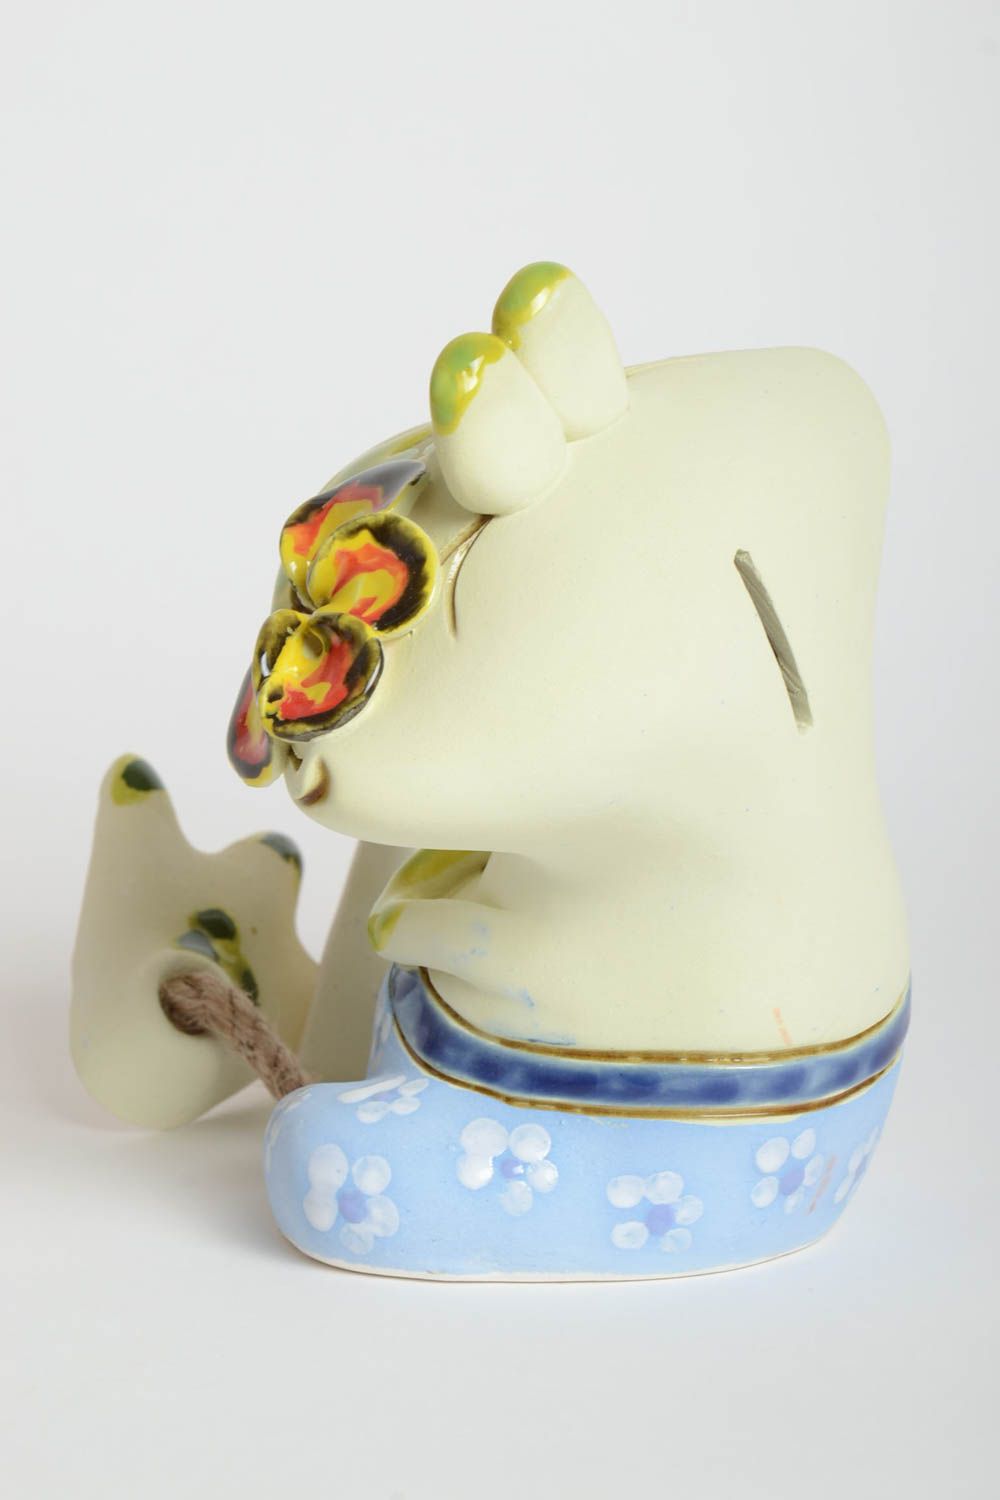 Beautiful handmade ceramic moneybox ceramic figurine clay craft home design photo 5